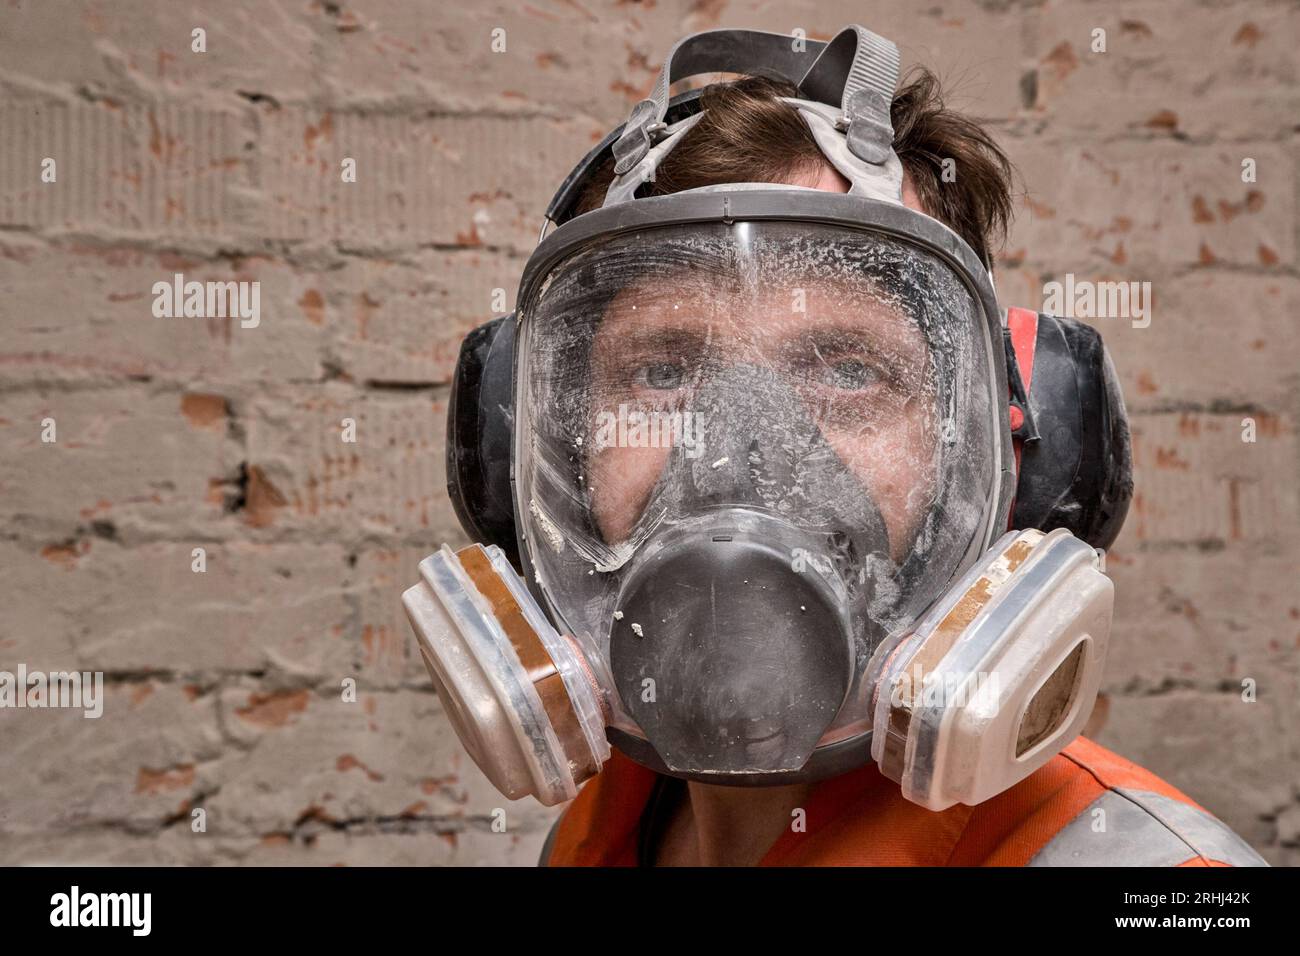 Männlicher Arbeiter, der Vollgesichts-Atemschutzmaske und Gehörschutz für Arbeiten in Gefahrenumgebungen trägt. Stockfoto